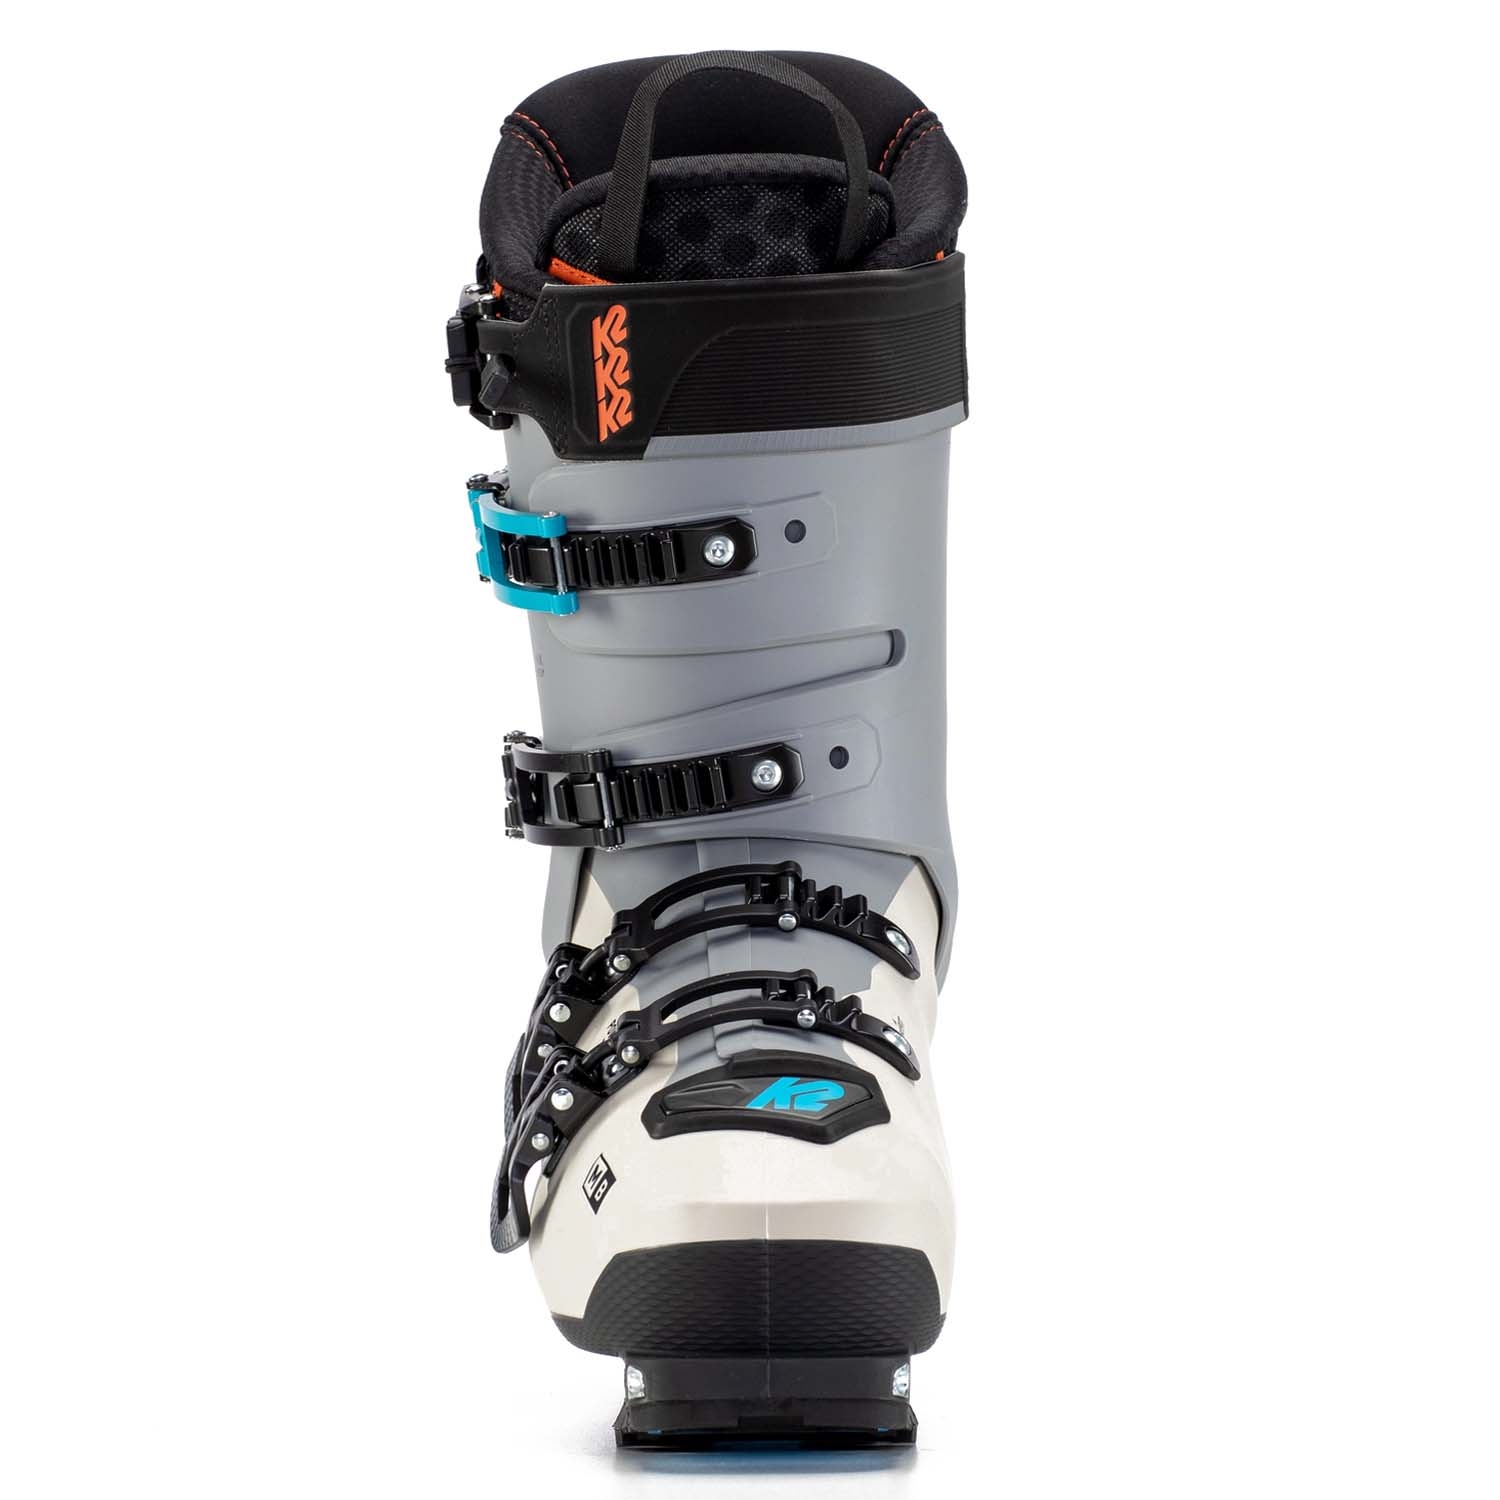 K2 Mindbender 120 Ski Boots 2022